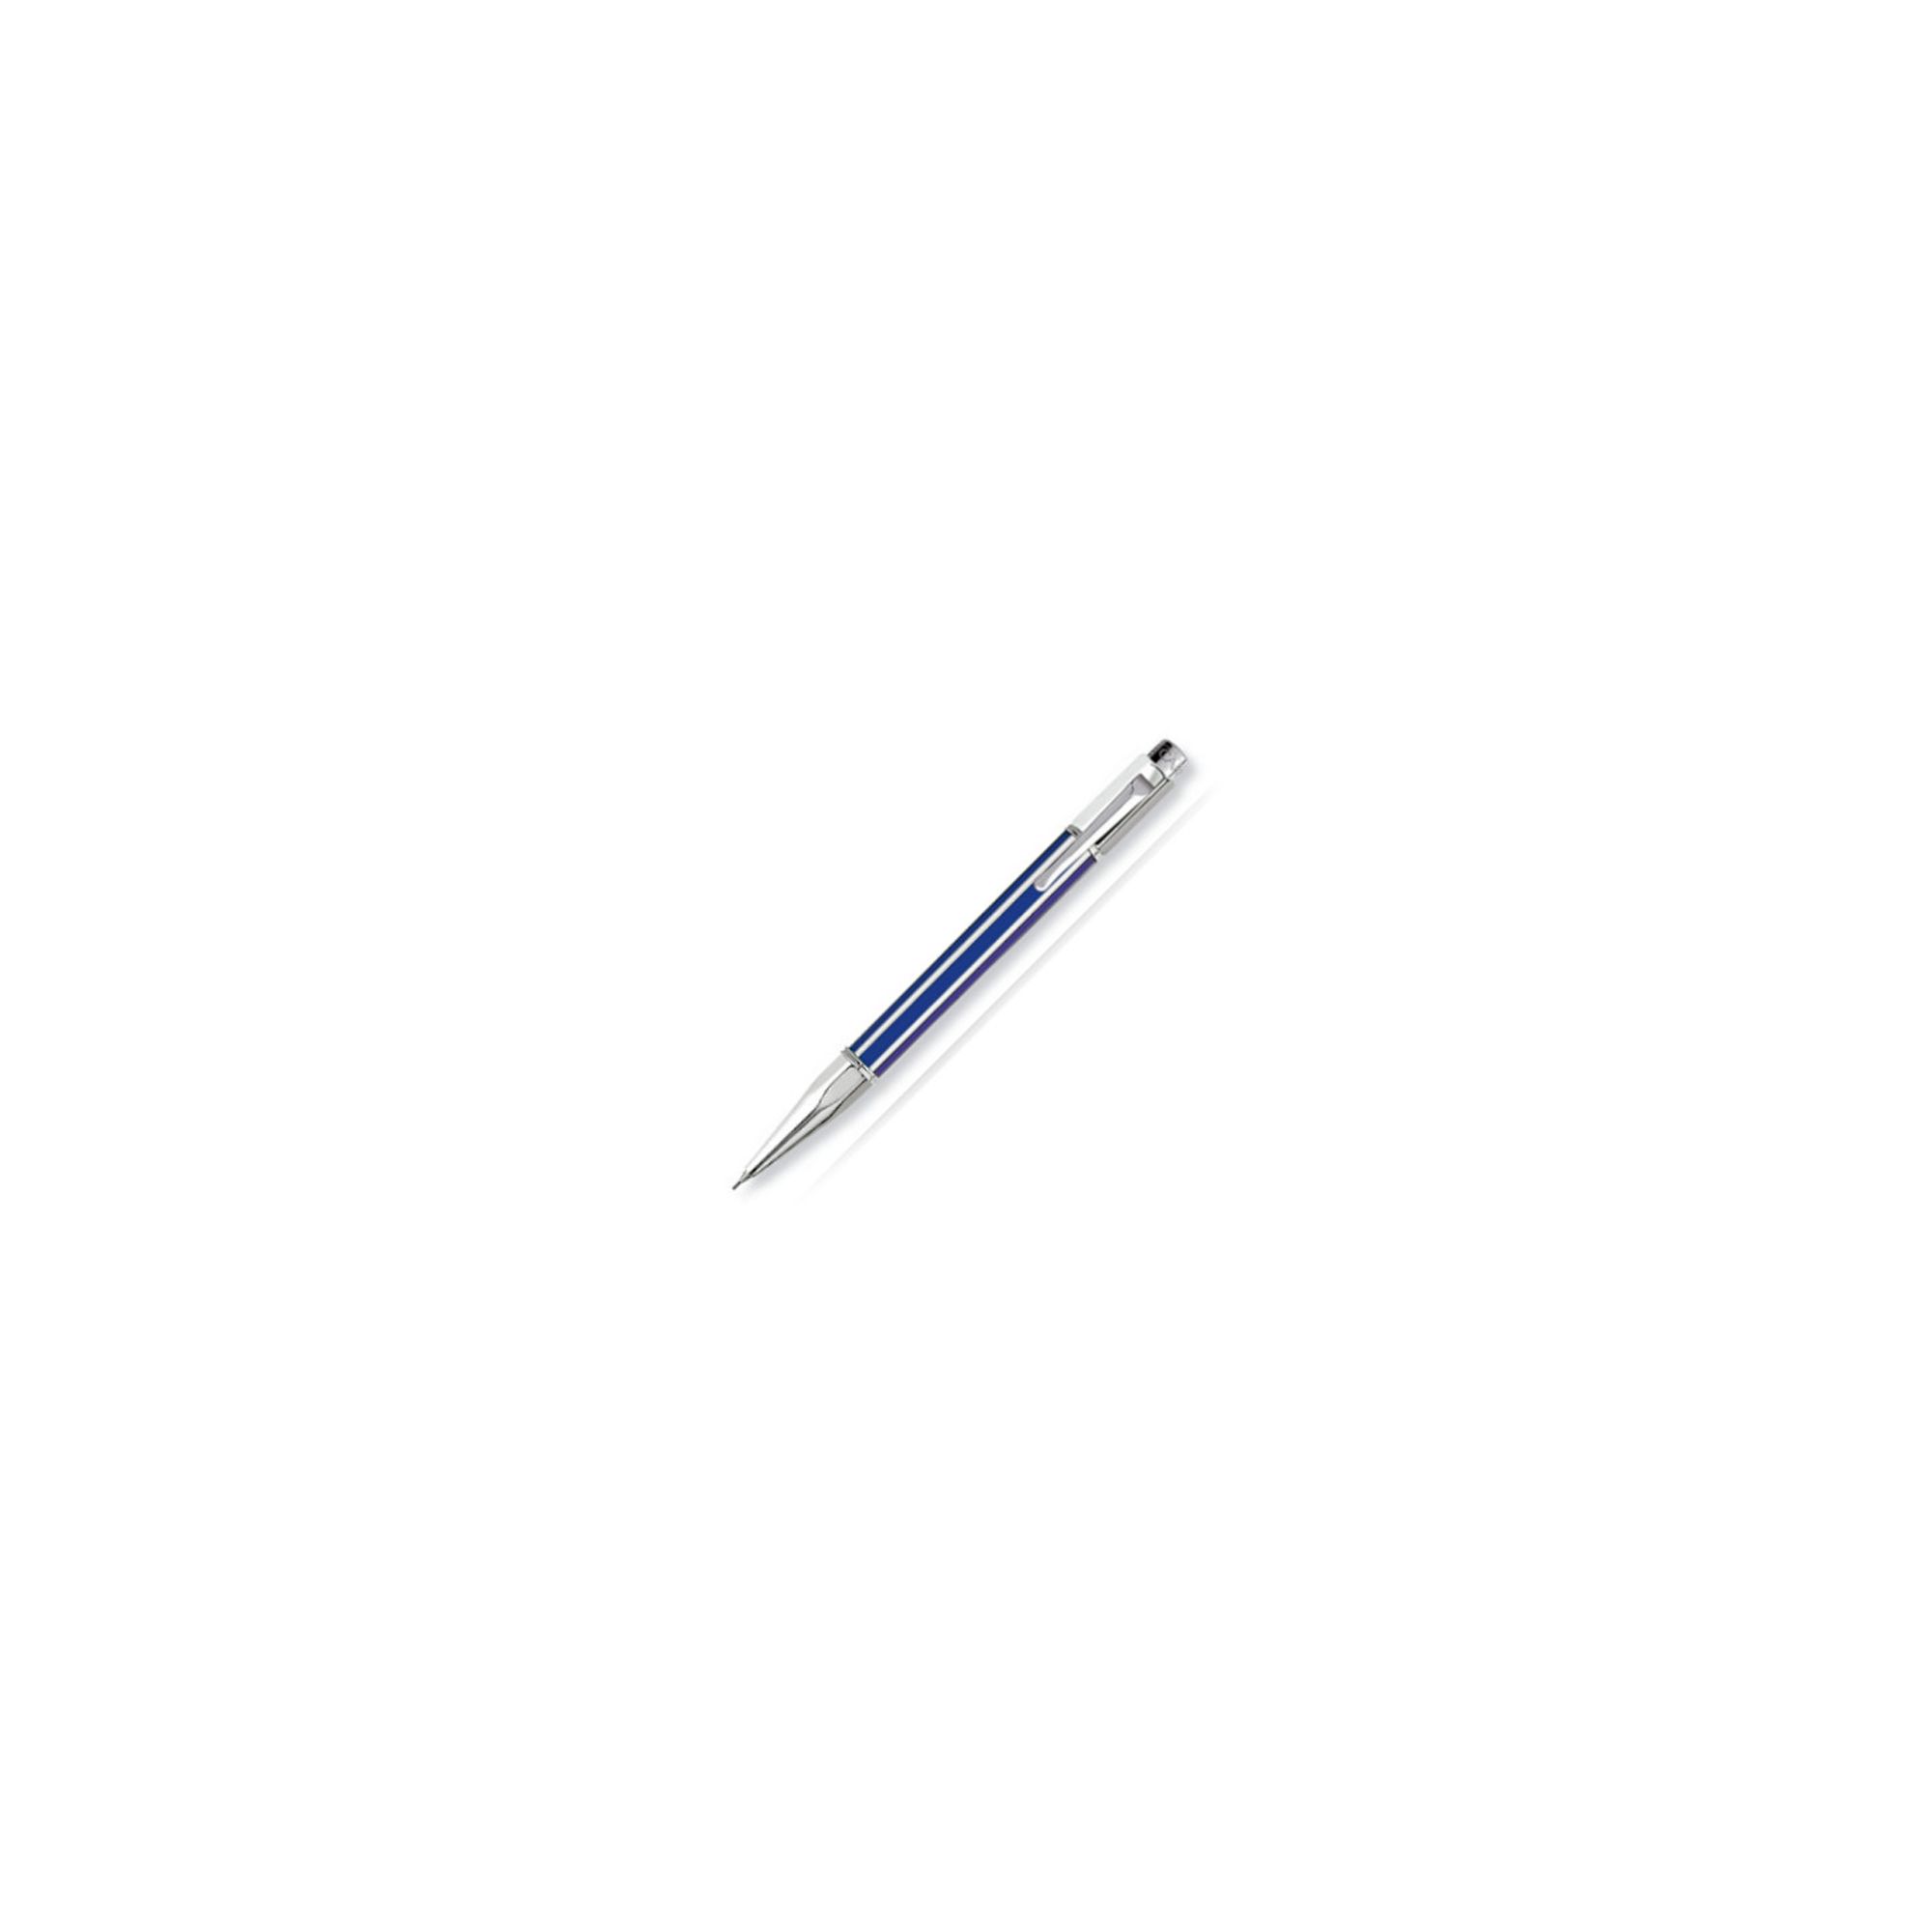 Caran d'Ache Varius China Blue Mechanical Pencil at Tesco Direct